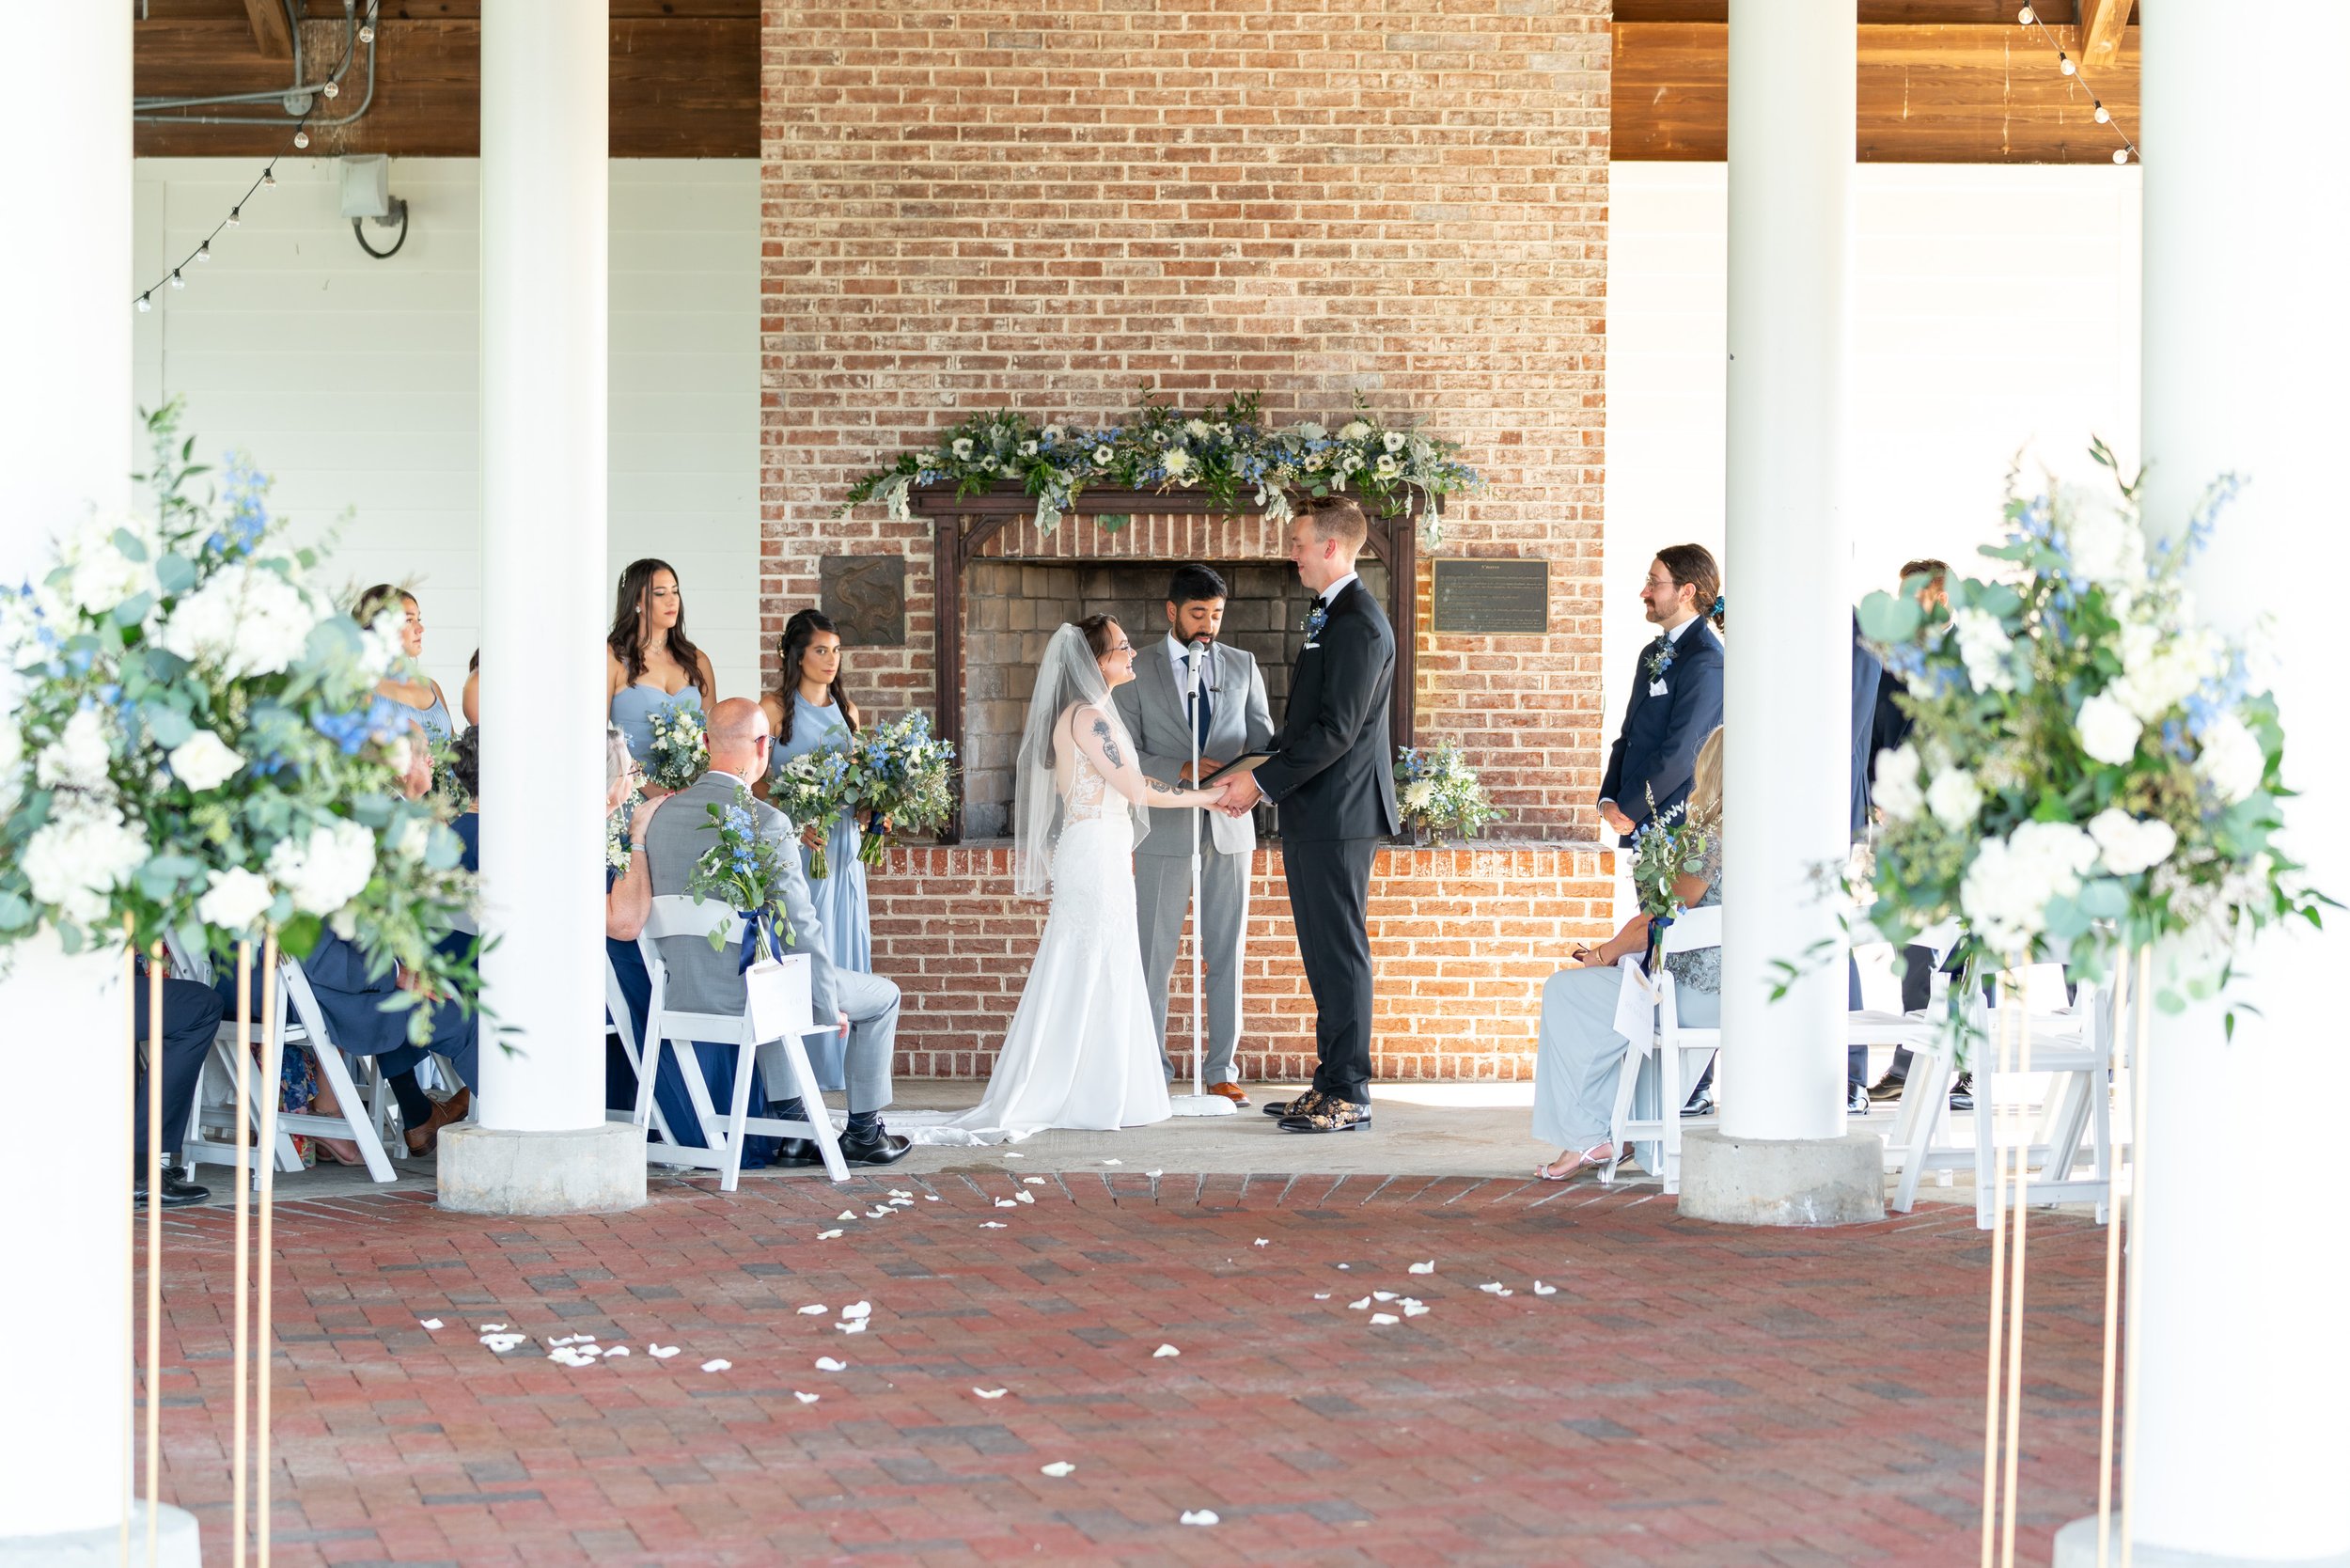 Wedding ceremony in Regatta pavilion at Hyatt Regency Chesapeake hotel